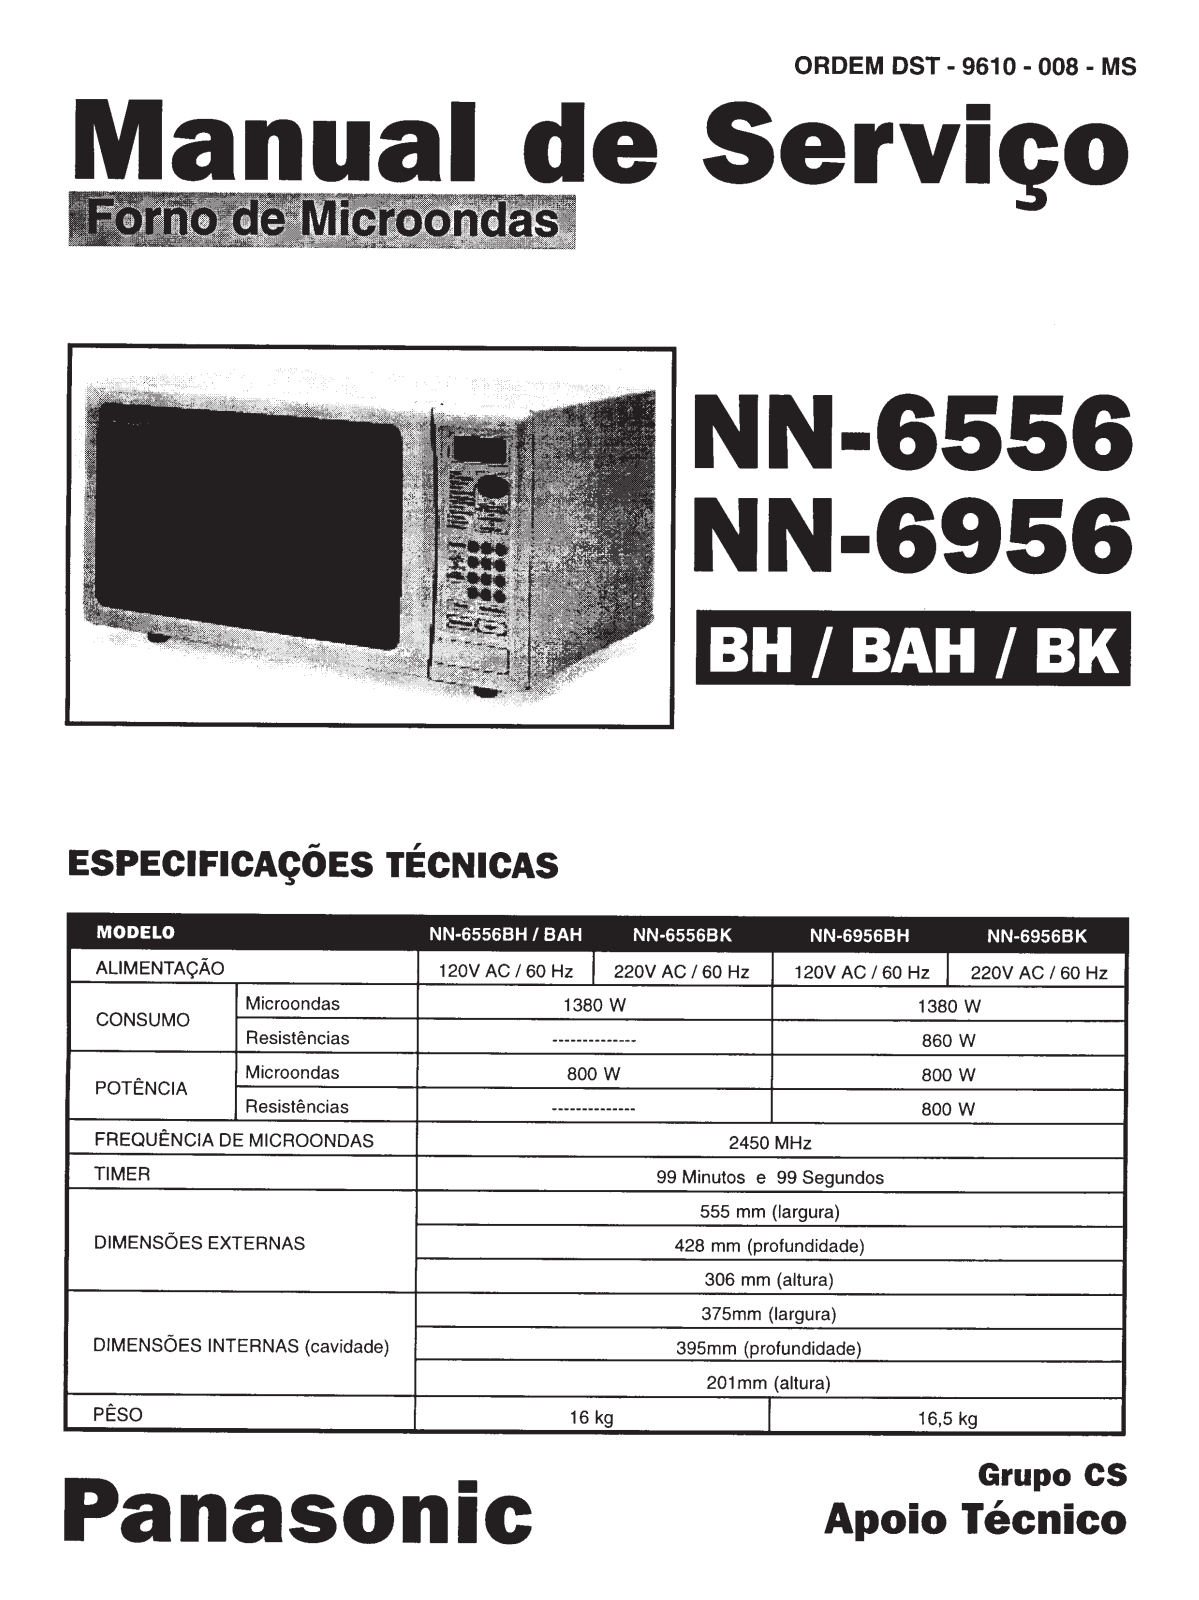 Panasonic NN-6956 Schematic